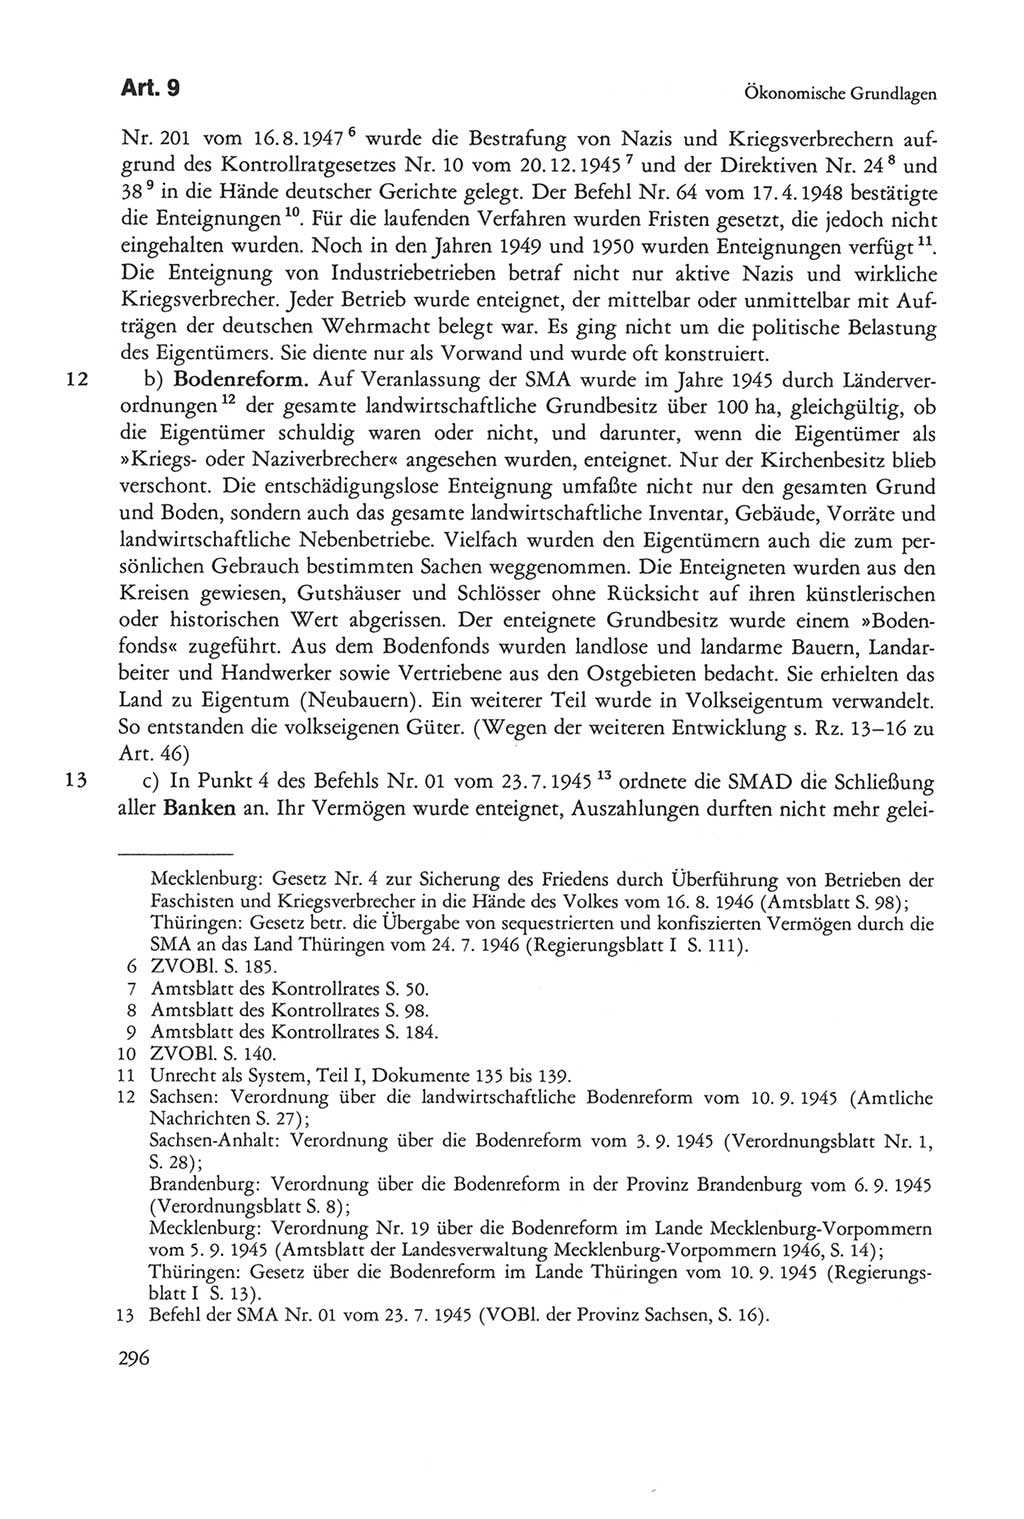 Die sozialistische Verfassung der Deutschen Demokratischen Republik (DDR), Kommentar 1982, Seite 296 (Soz. Verf. DDR Komm. 1982, S. 296)